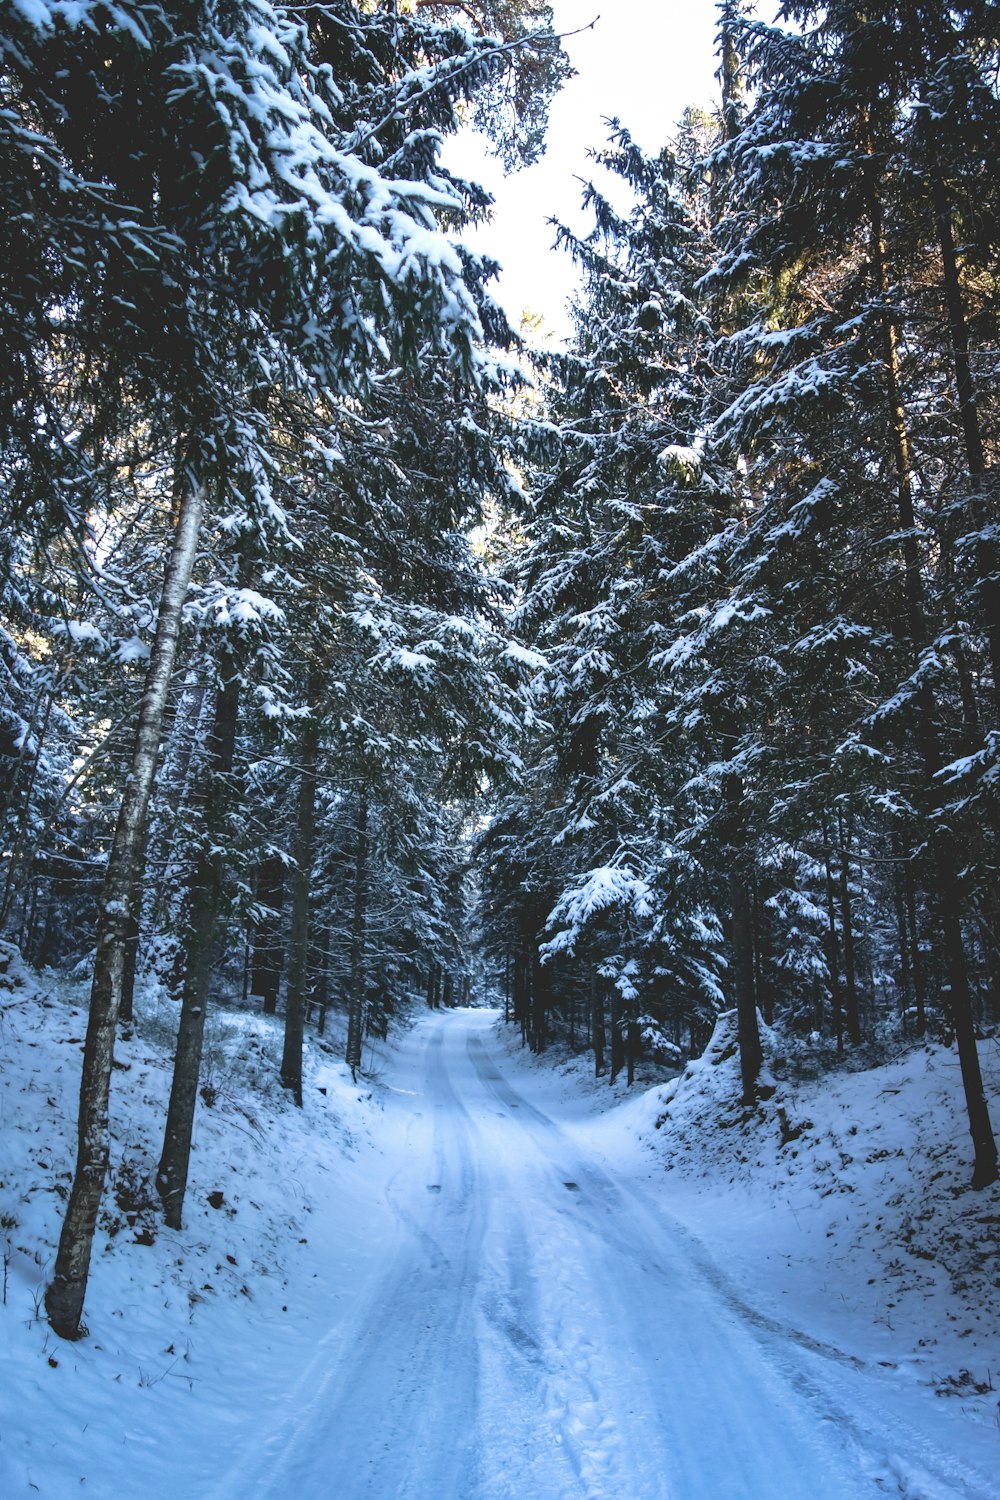 caminho de neve no meio das árvores